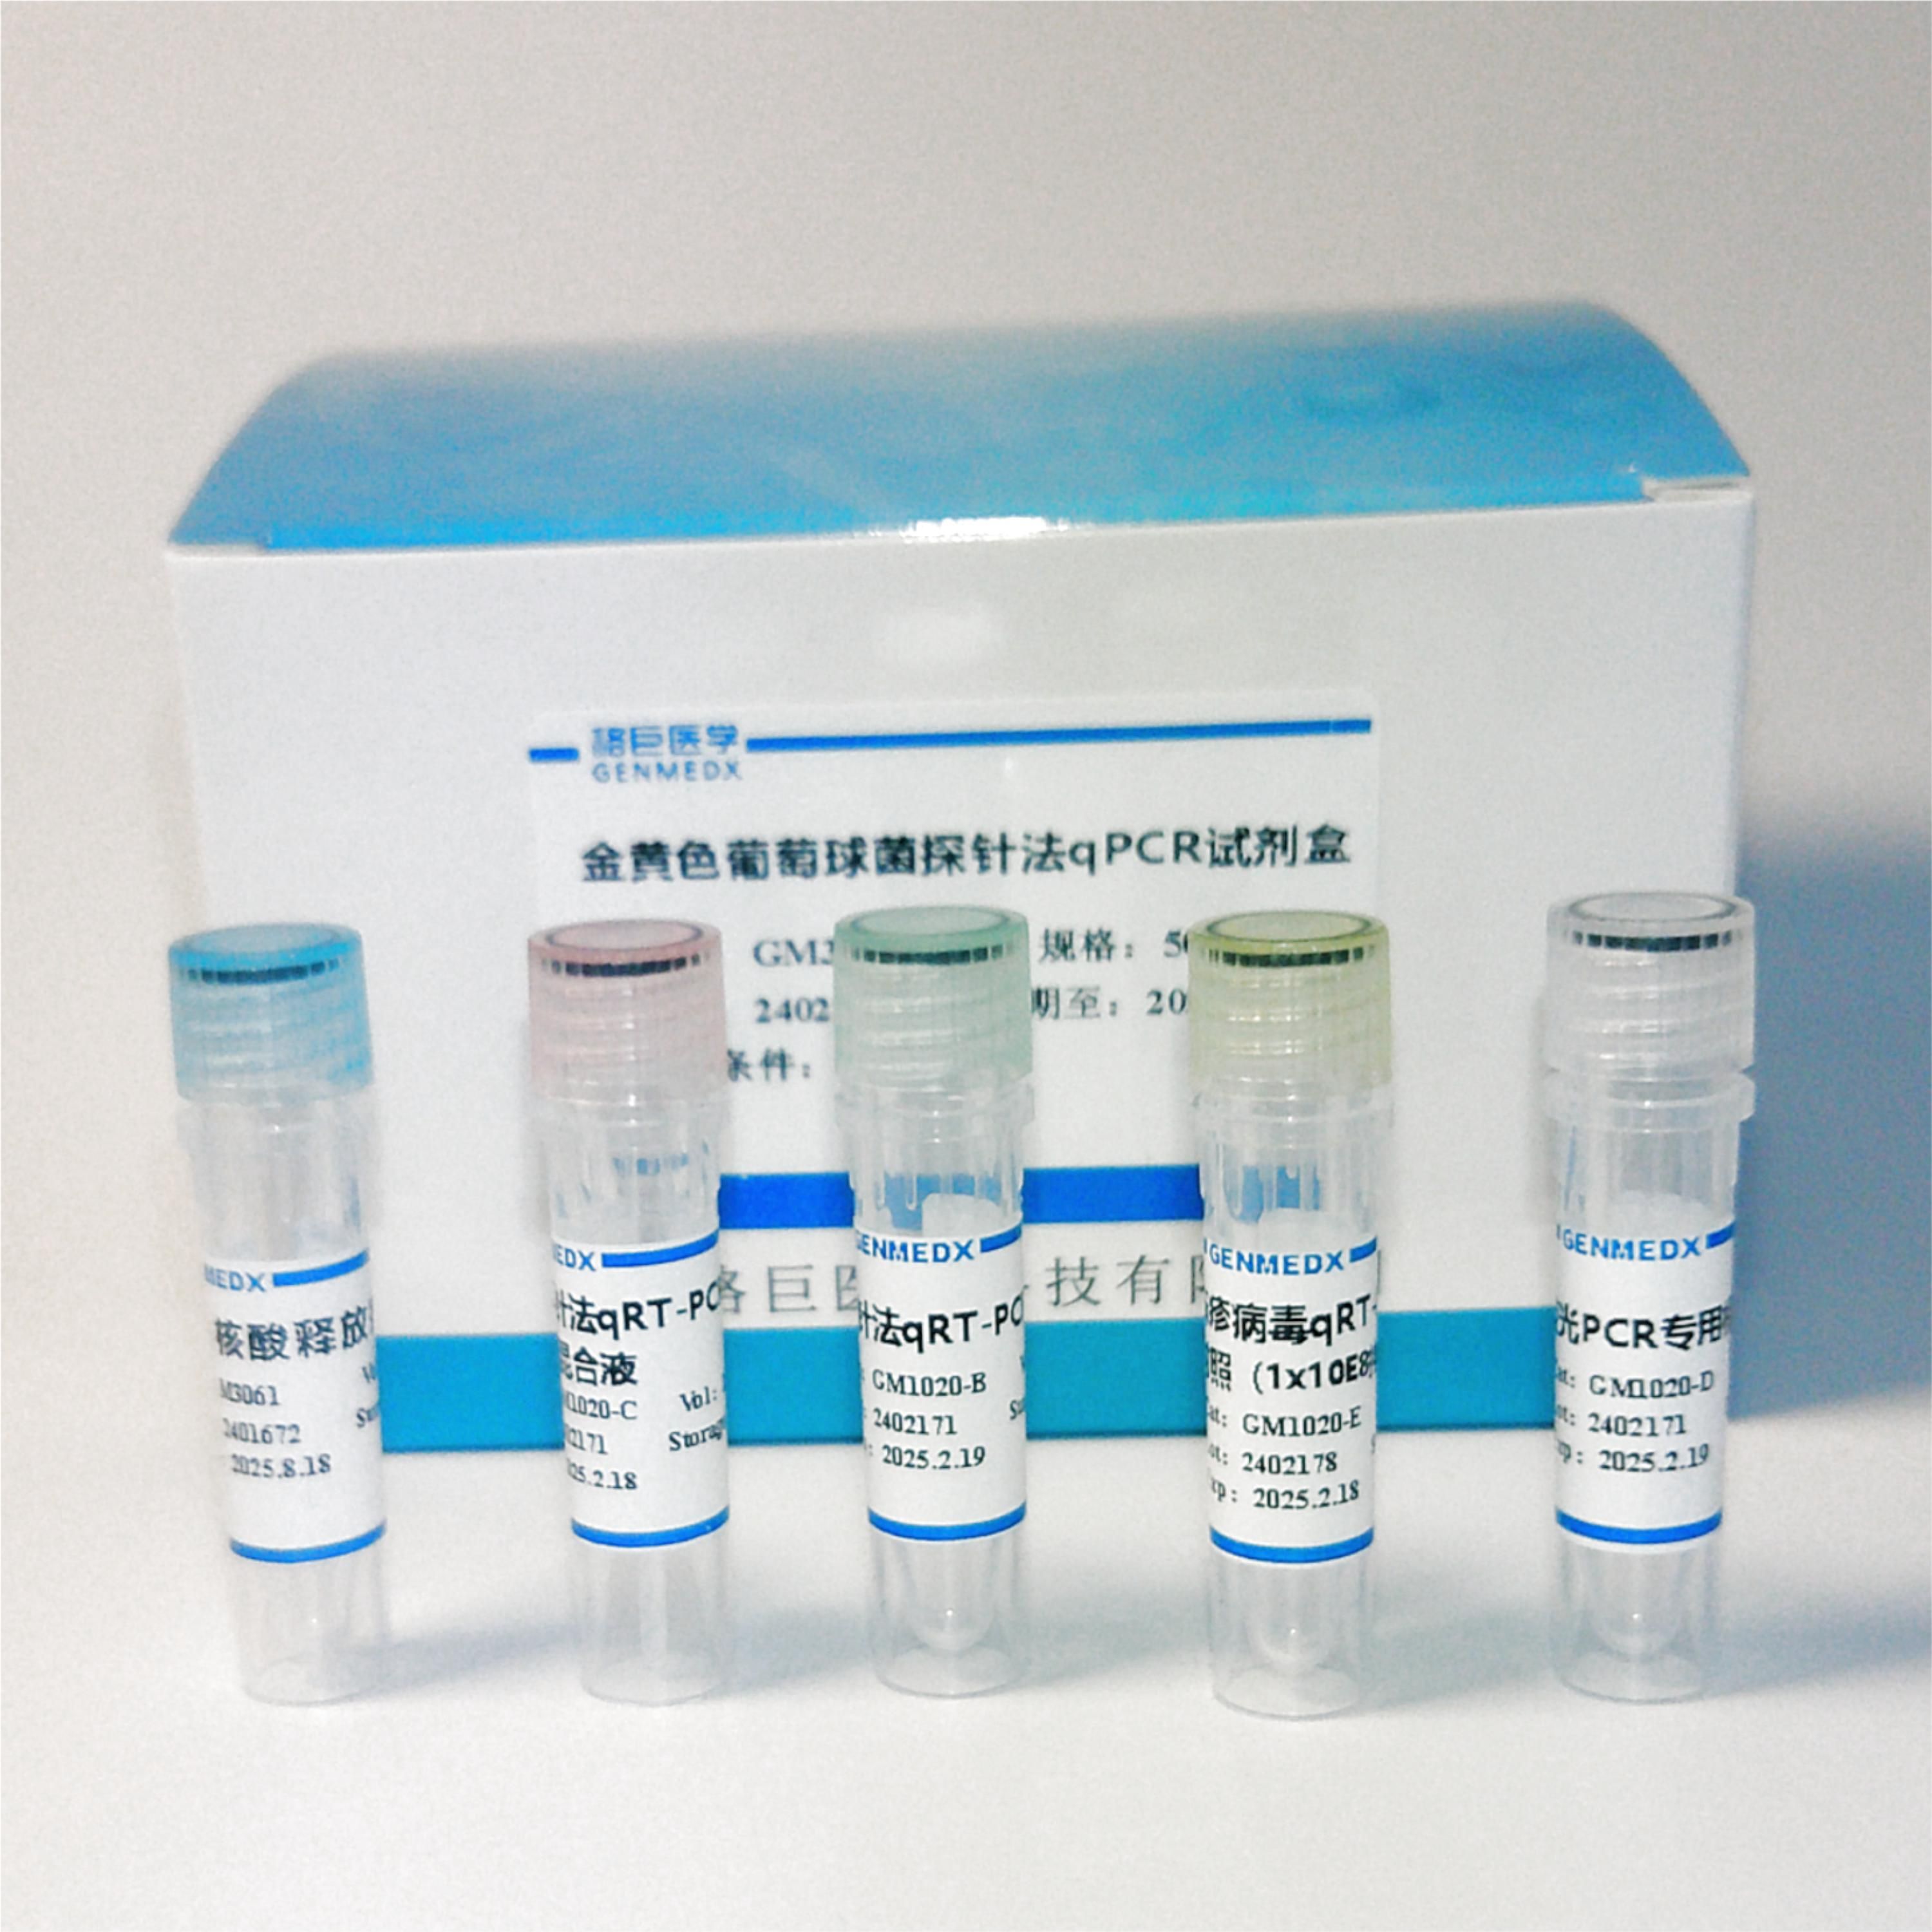 肝胰脏细小病毒探针法荧光定量PCR试剂盒